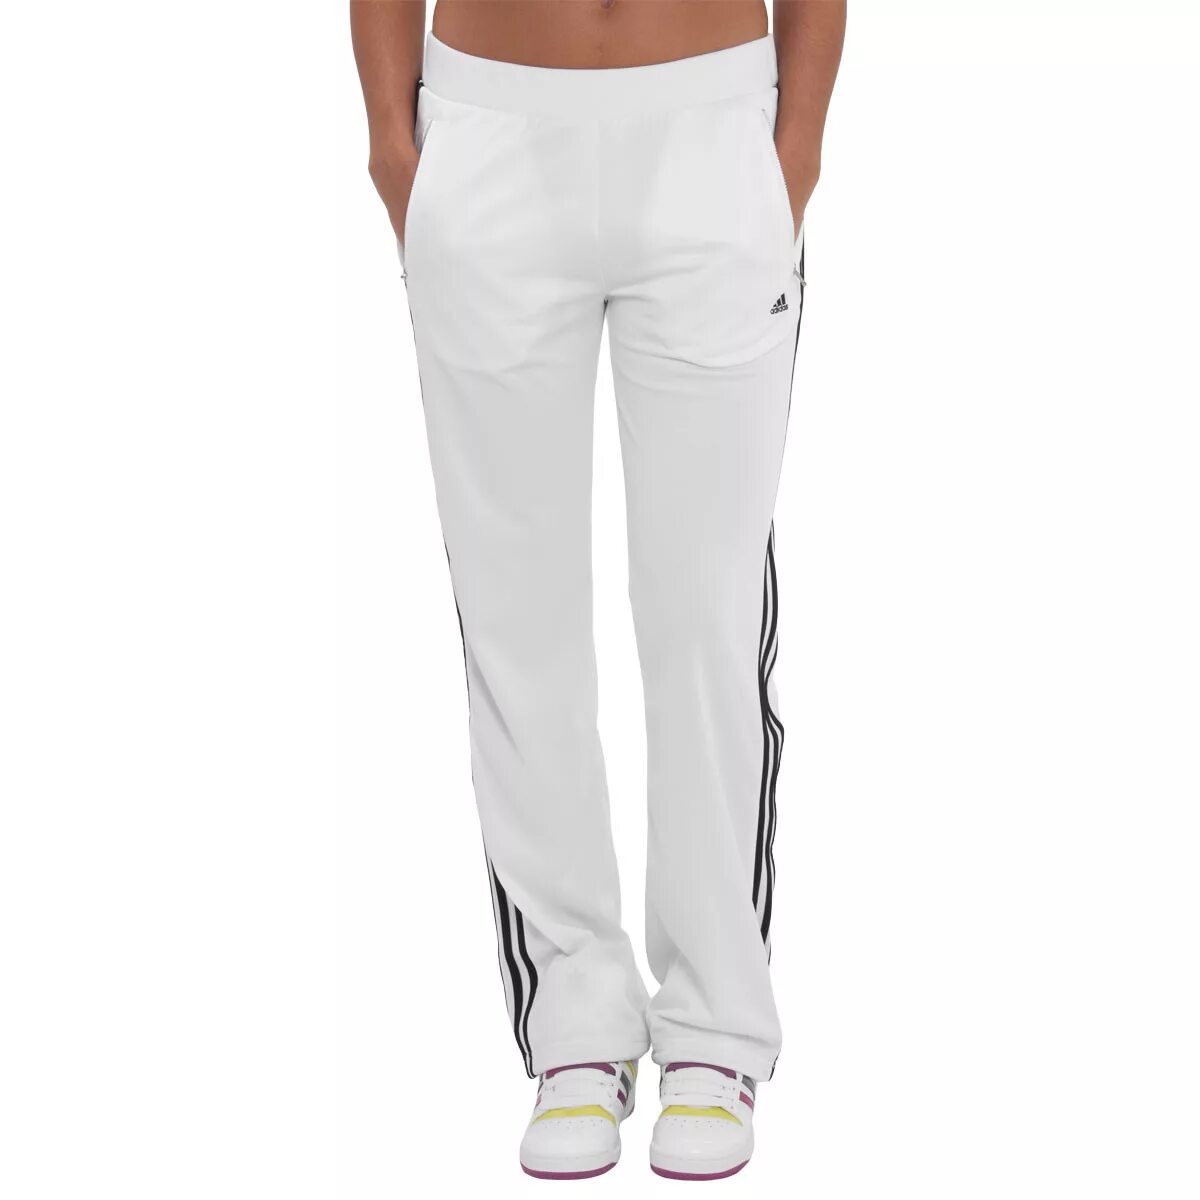 Спортивное штаны купить недорого. H16283 спортивные брюки женские adidas. Брюки спортивные адидас белый. Полиэстеровые штаны женские адидас. Брюки адидас женские слаксы.